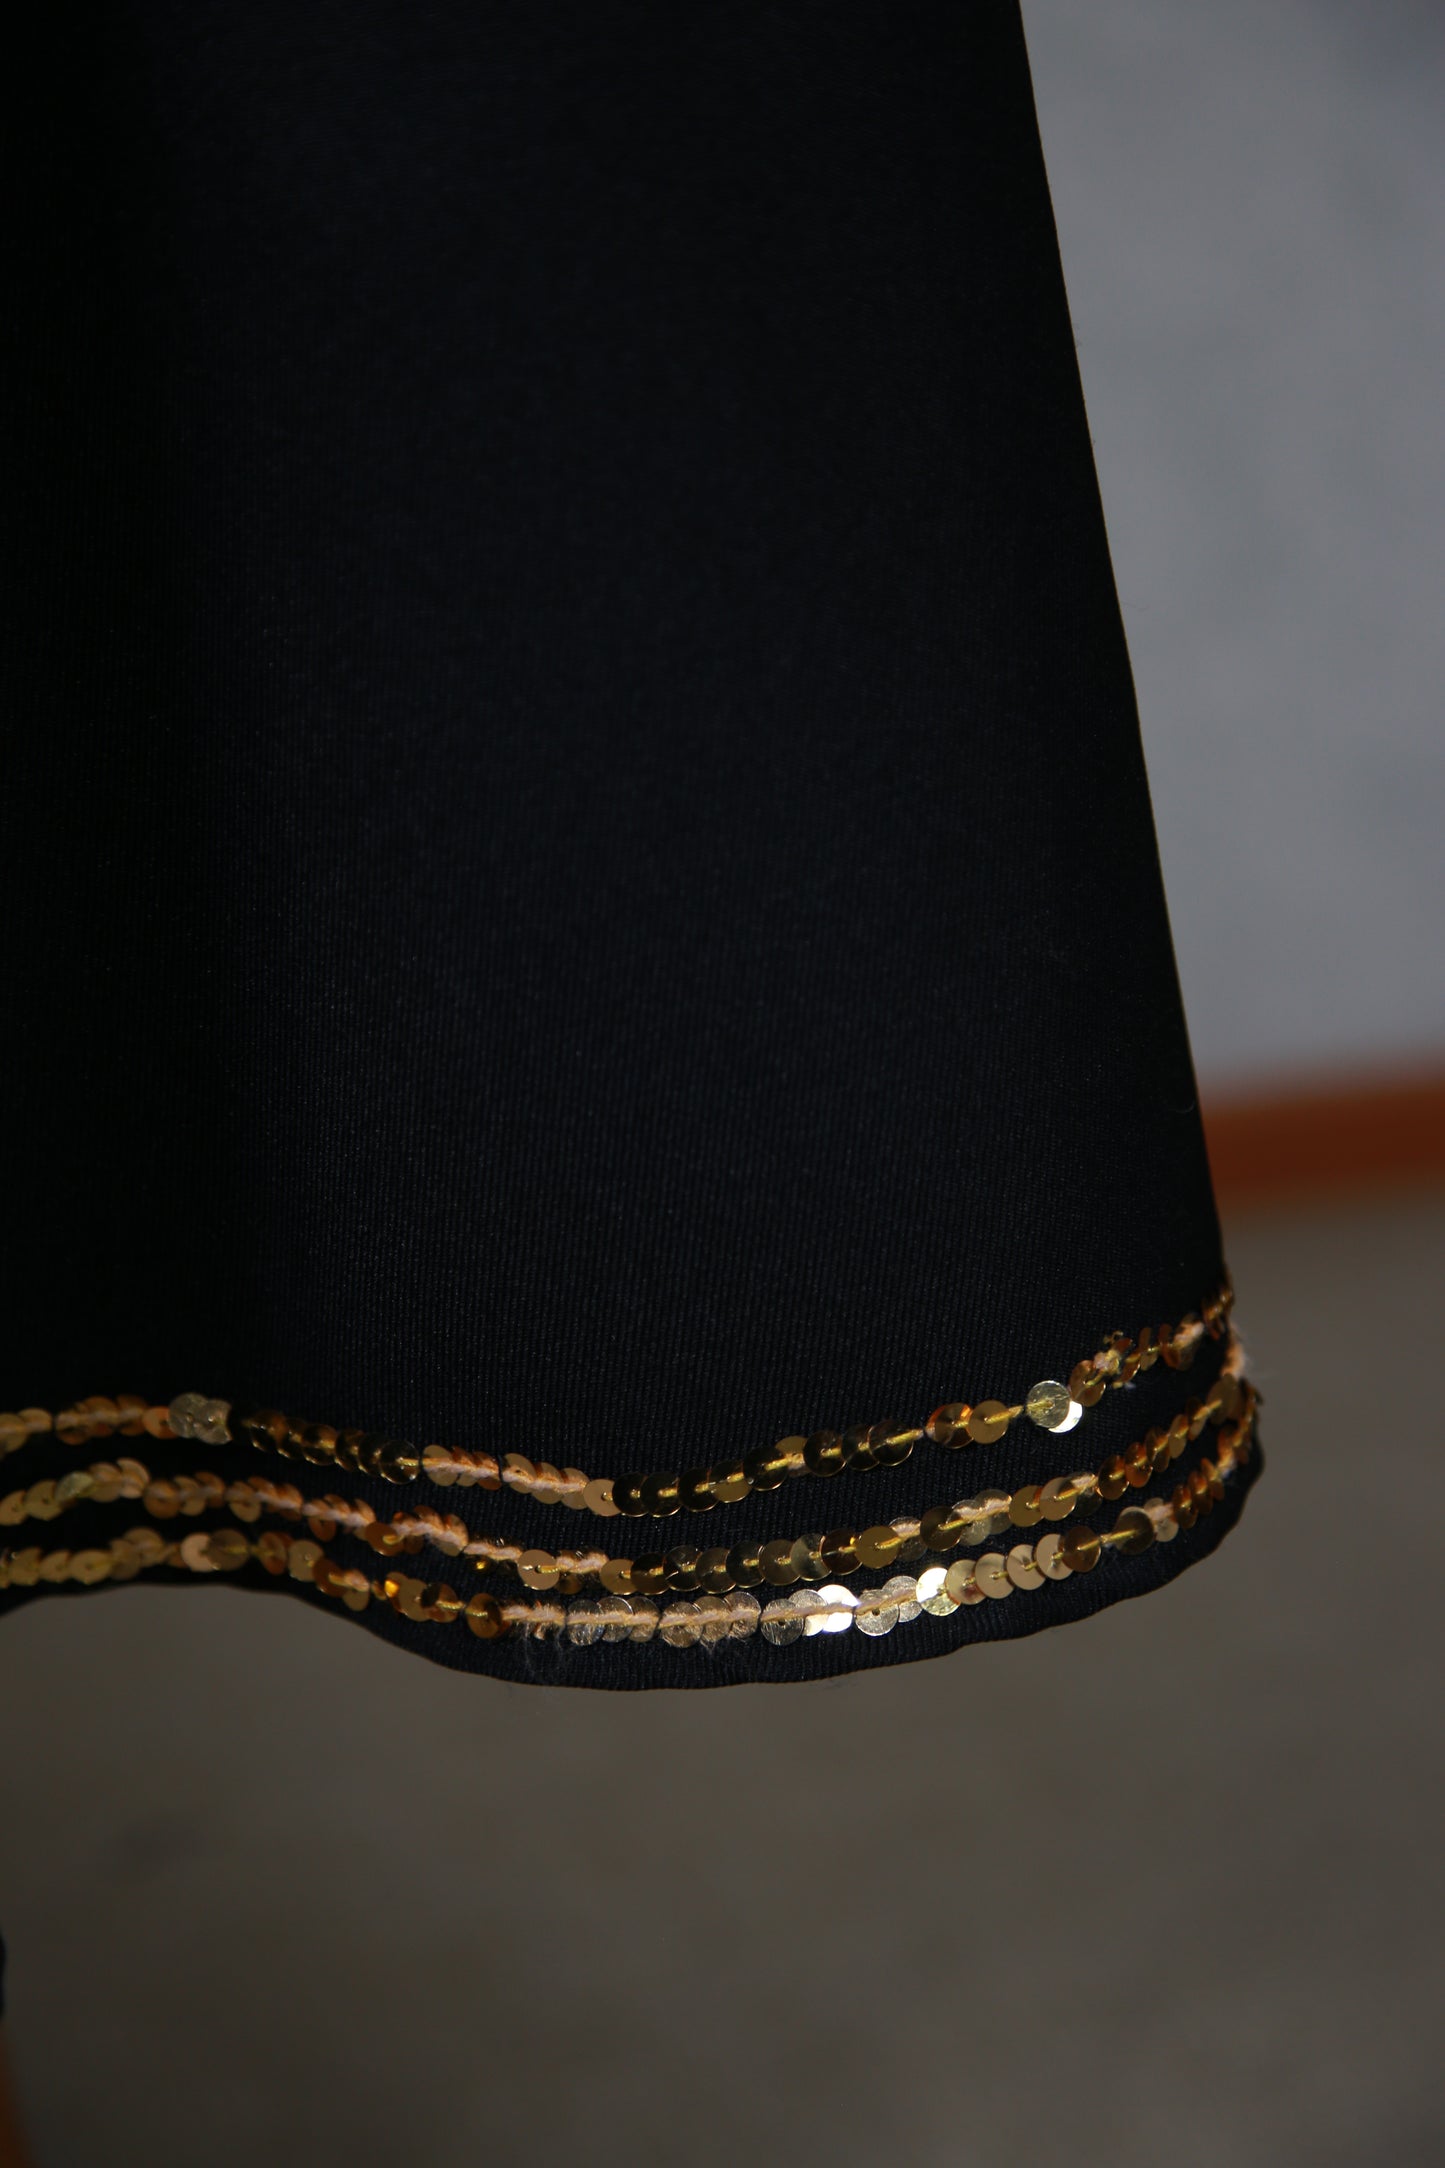 Musta mekko kultaisella paljettihelmalla